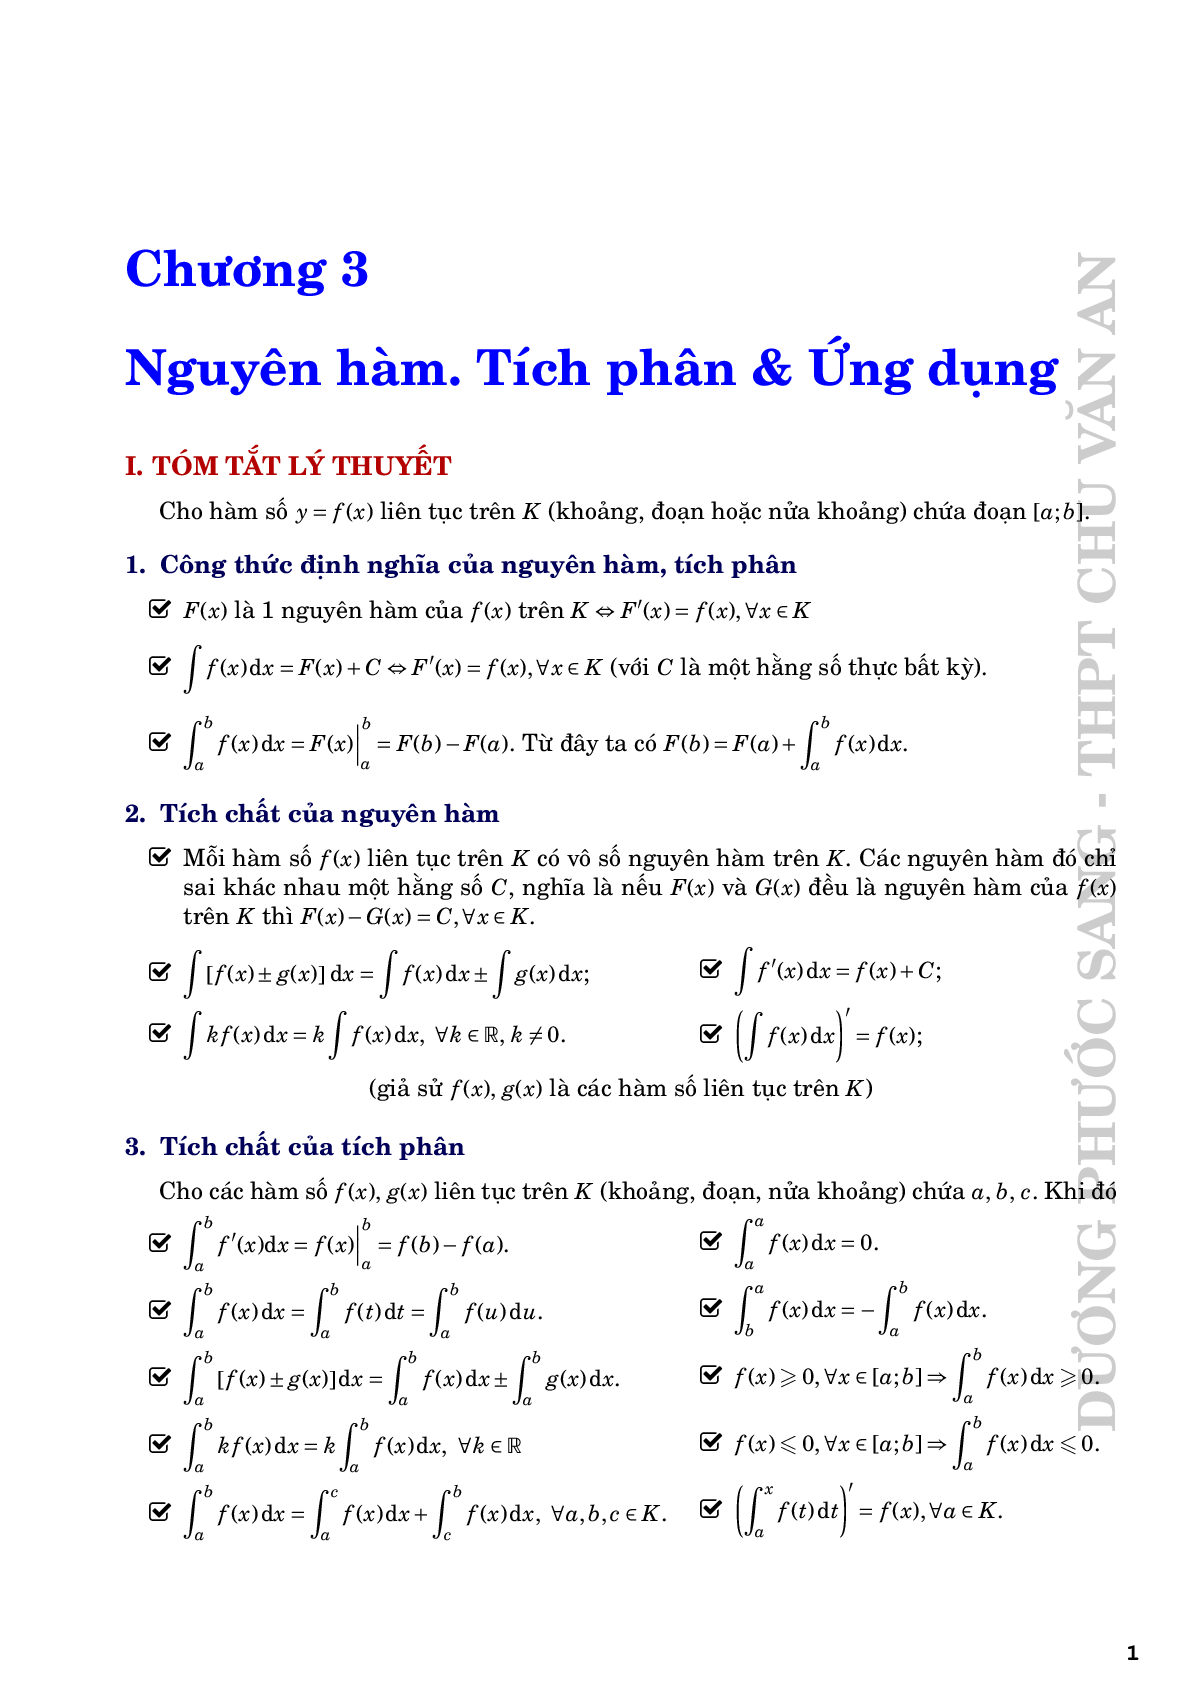 Nguyên hàm tích phân và ứng dụng - Dương Phước Sang (trang 1)